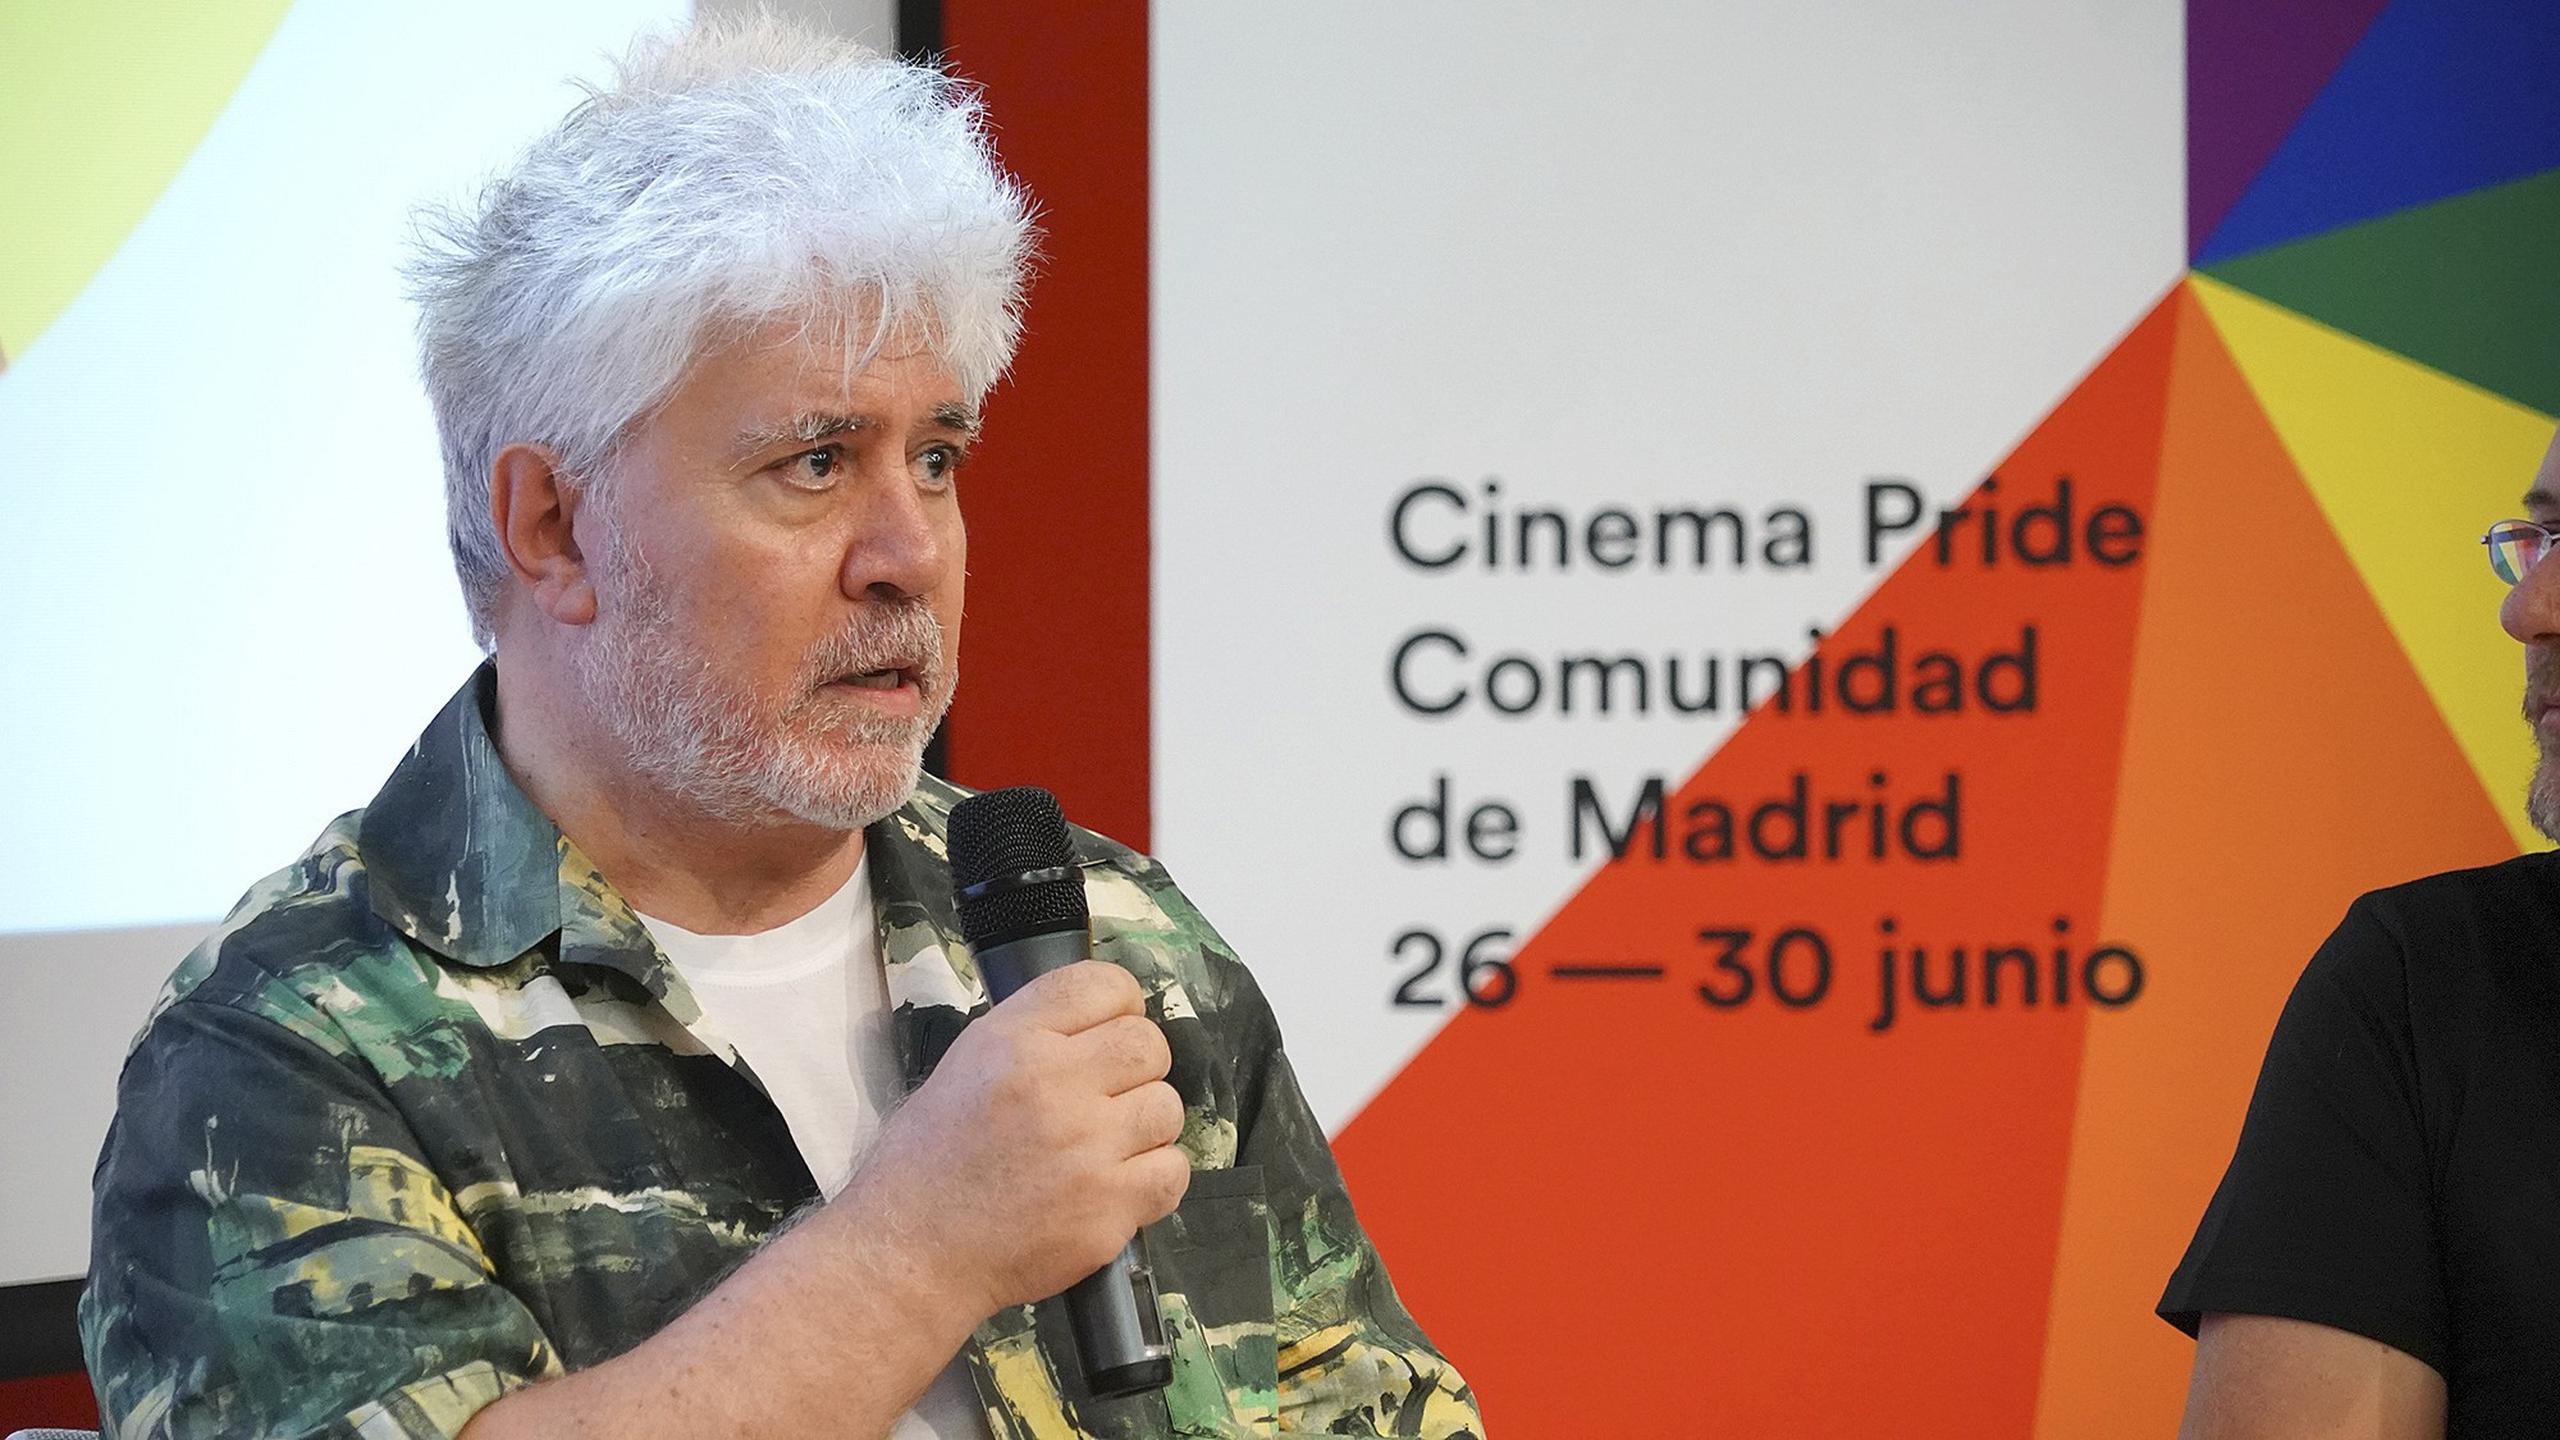 Fotografía facilitada por la Comunidad de Madrid del cineasta Pedro Almodóvar durante la presentación de su película "La mala educación" en el festival de cine de temática LGTB Cinema Pride en 2017. EFE
